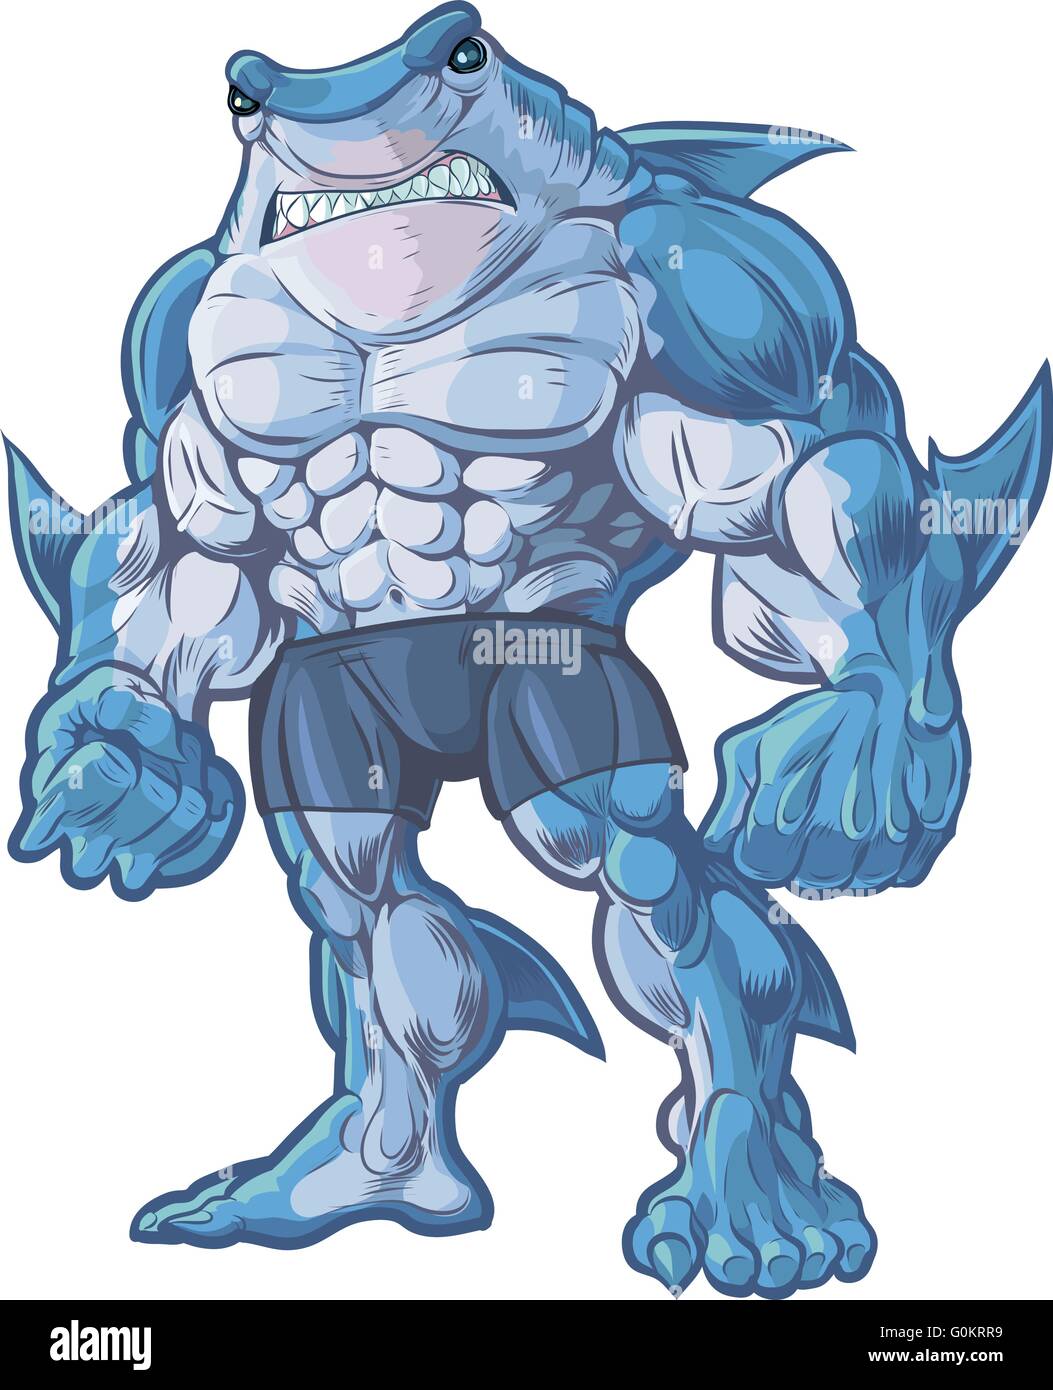 Vektor Cartoon-Clip Art Illustration ein muskulöser, hart und gemein aussehende anthropomorphe halb Hai, halb Mensch Mischwesen Stock Vektor